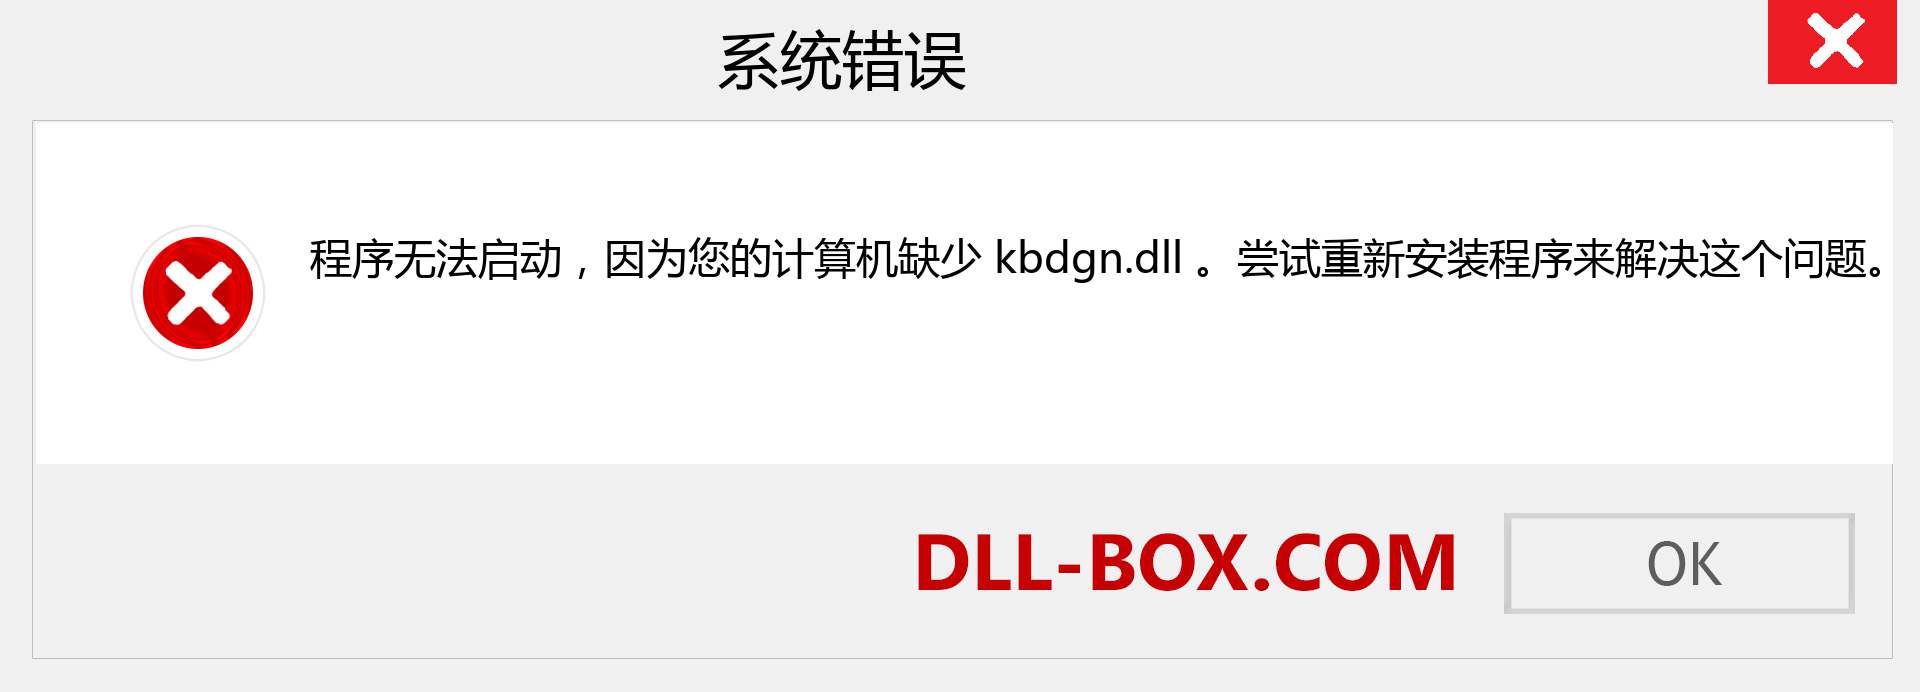 kbdgn.dll 文件丢失？。 适用于 Windows 7、8、10 的下载 - 修复 Windows、照片、图像上的 kbdgn dll 丢失错误